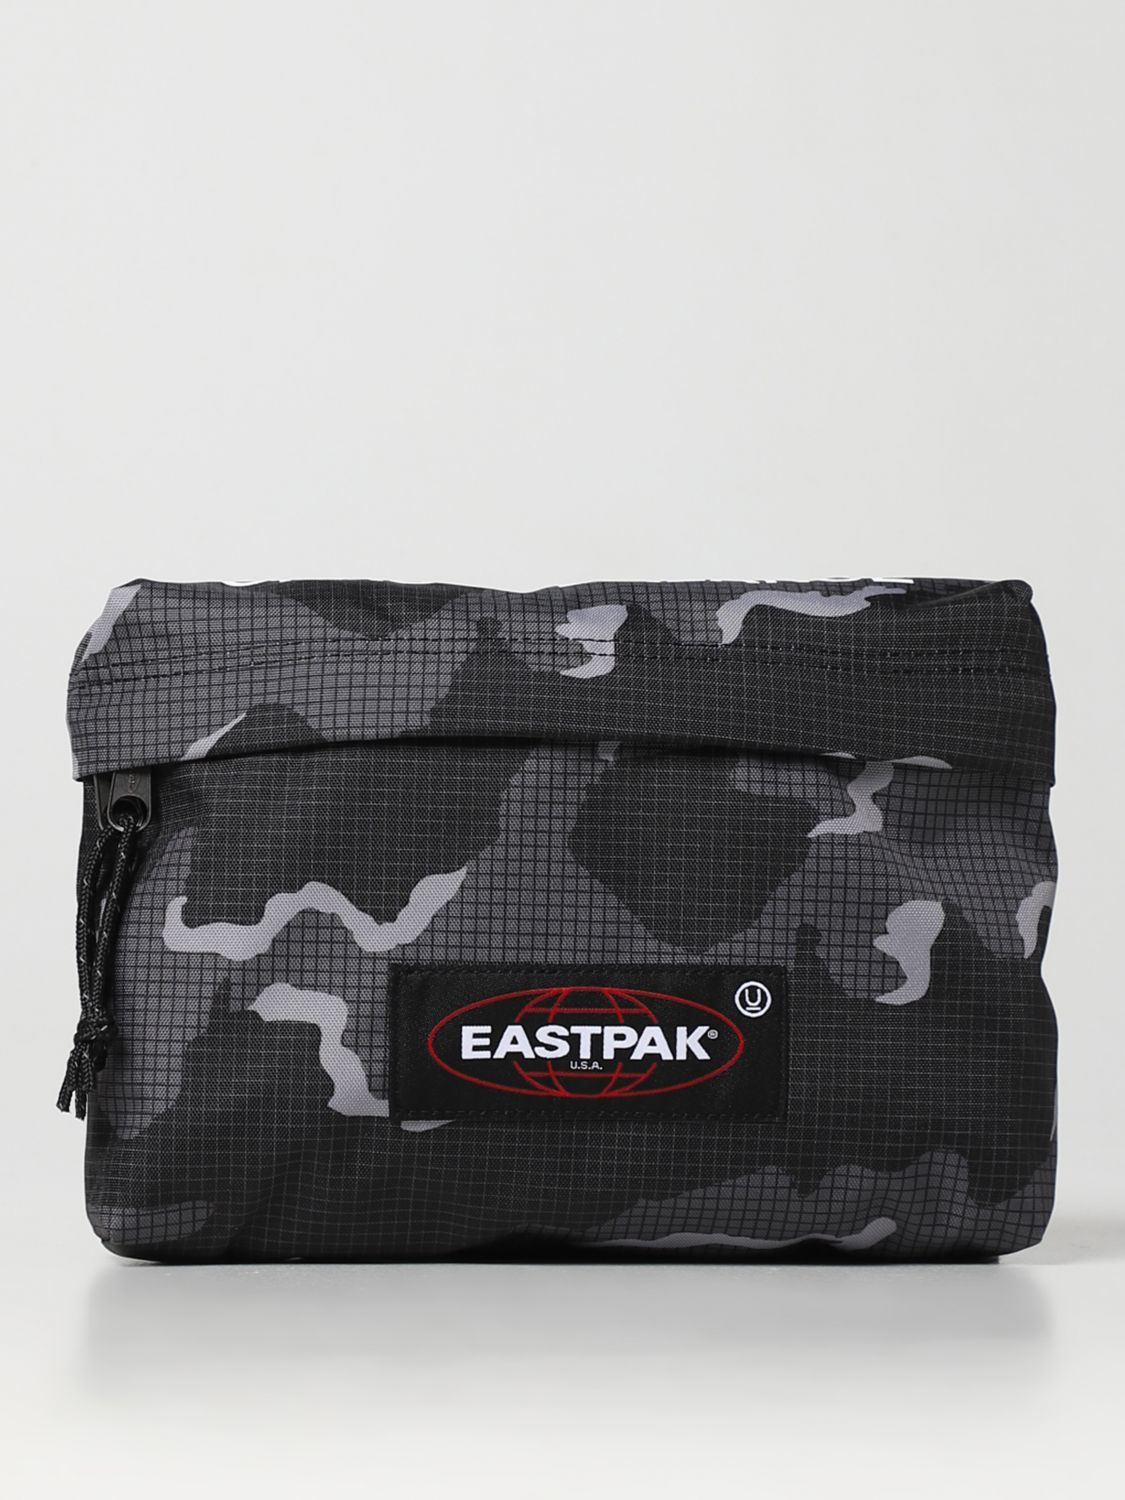 EASTPAK SHOULDER BAG EASTPAK MEN COLOR BLACK,D95422002